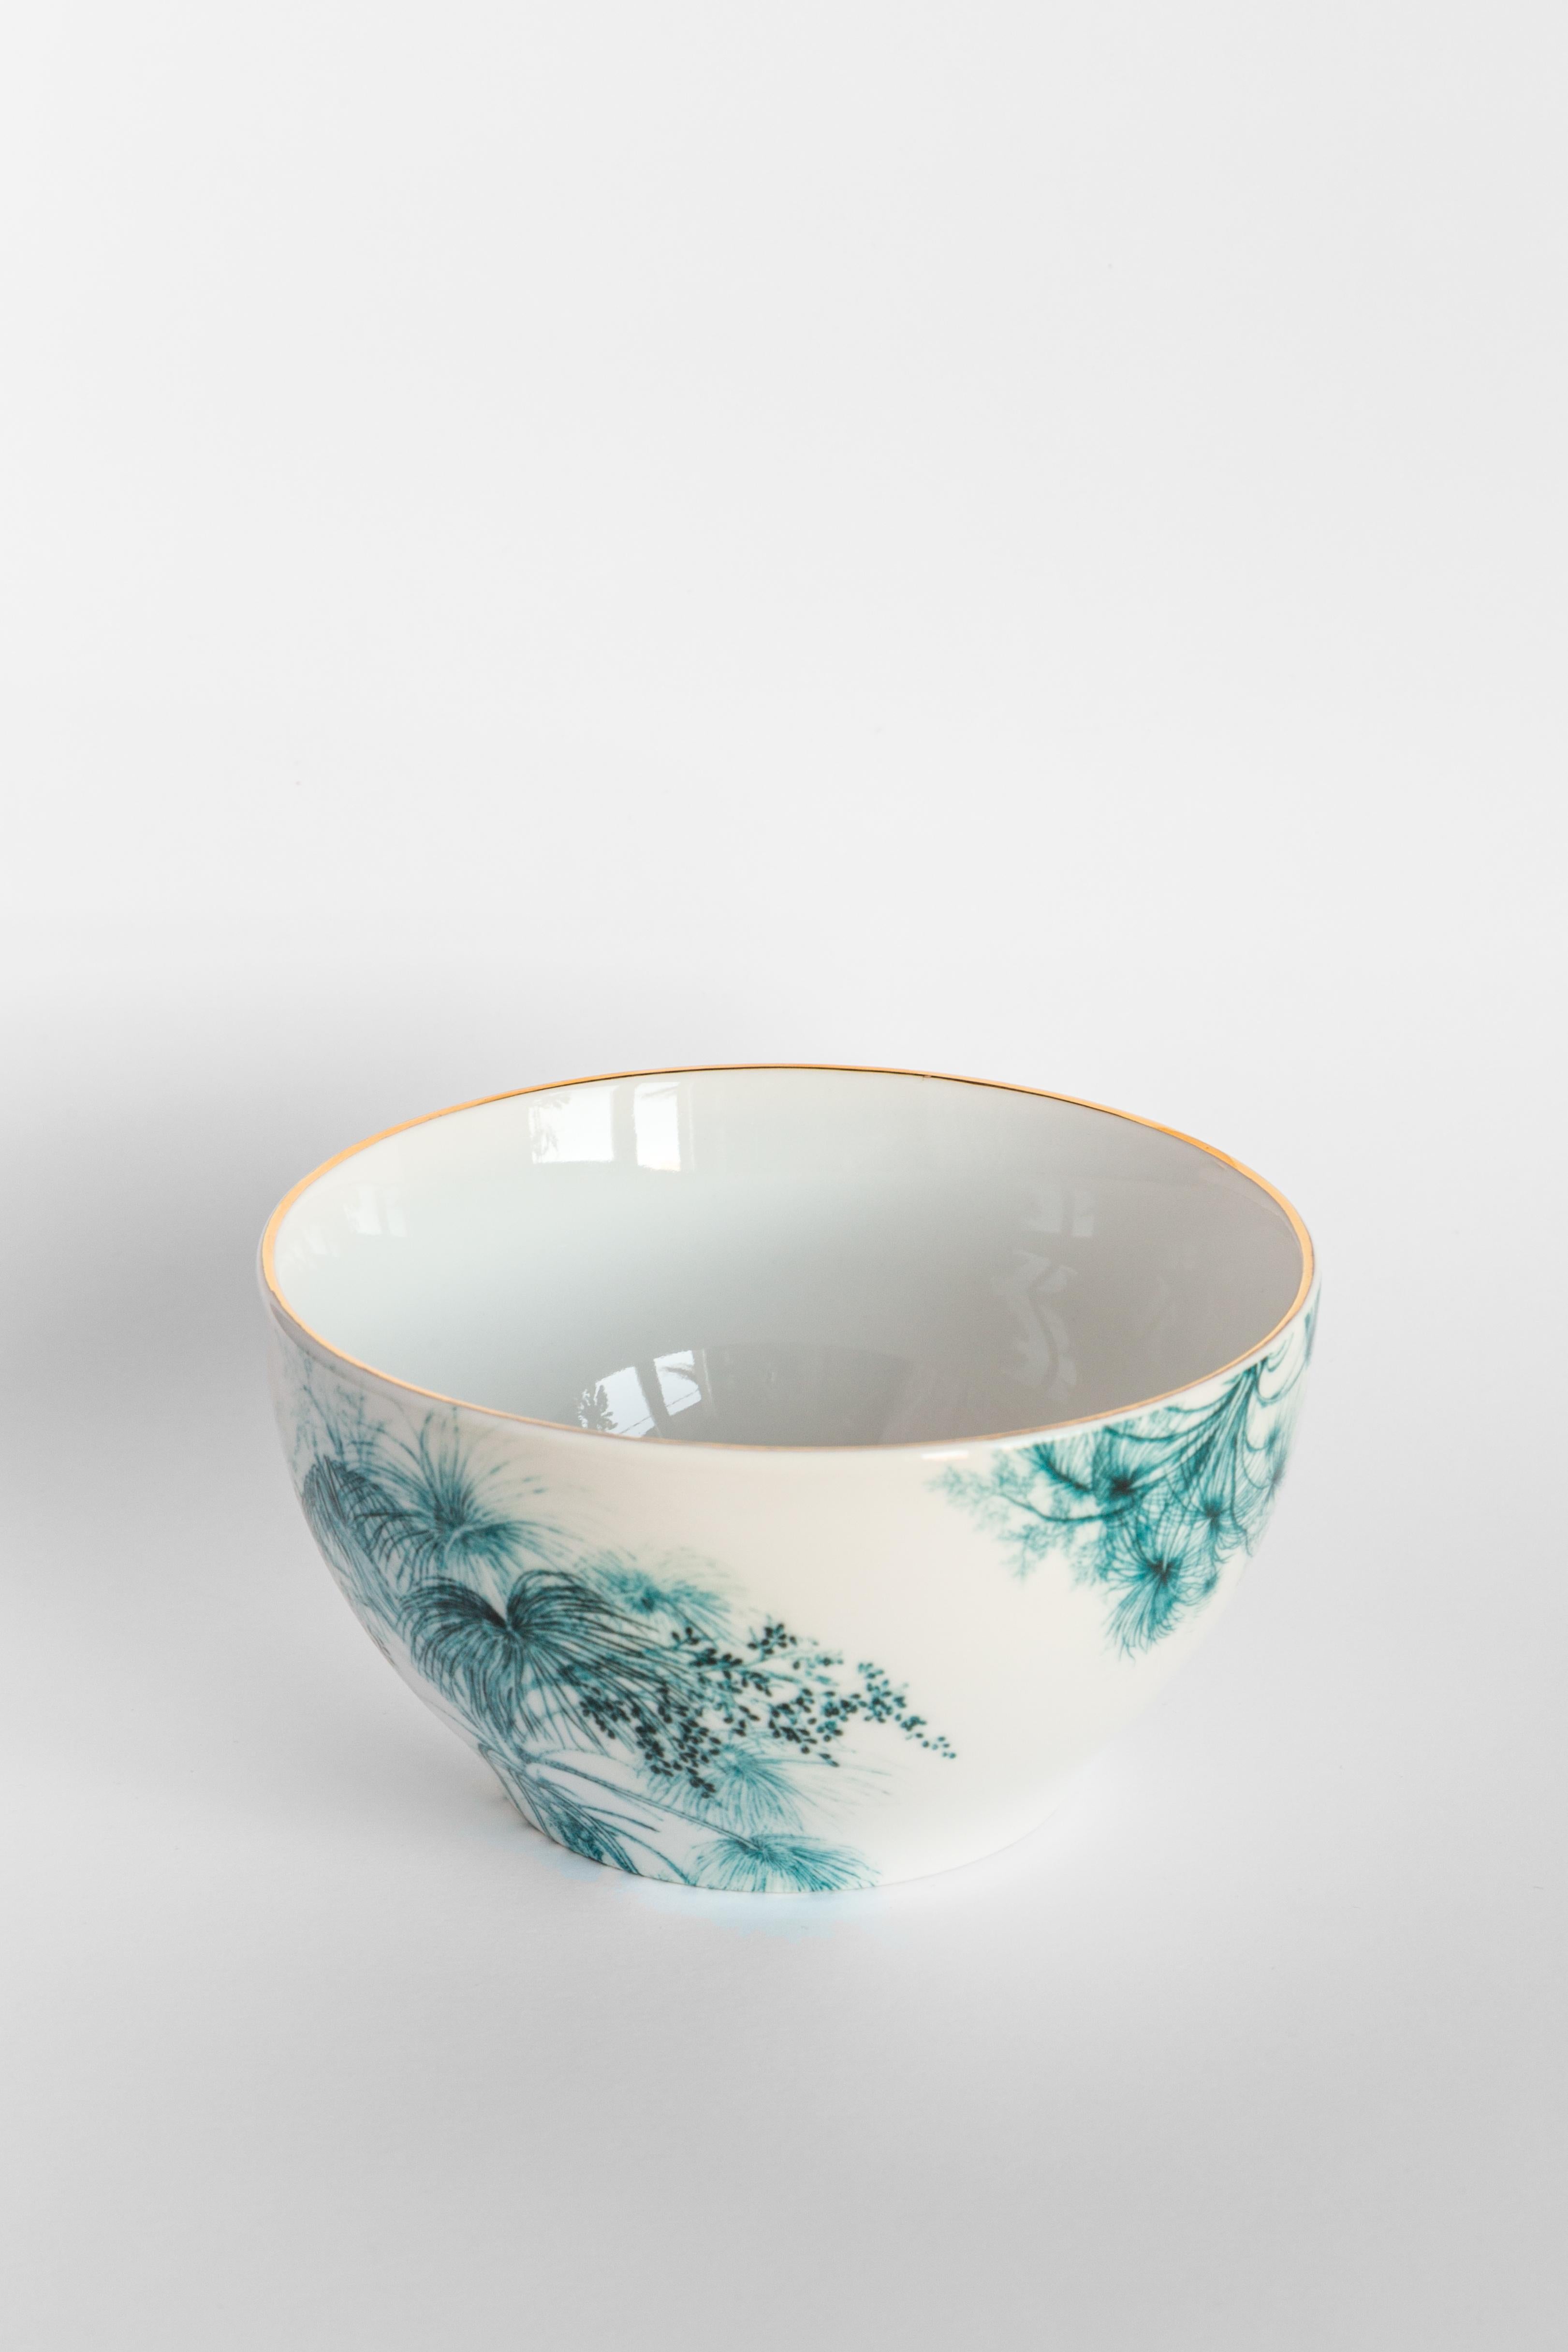 Italian Las Palmas, Six Contemporary Porcelain Bowls with Decorative Design For Sale